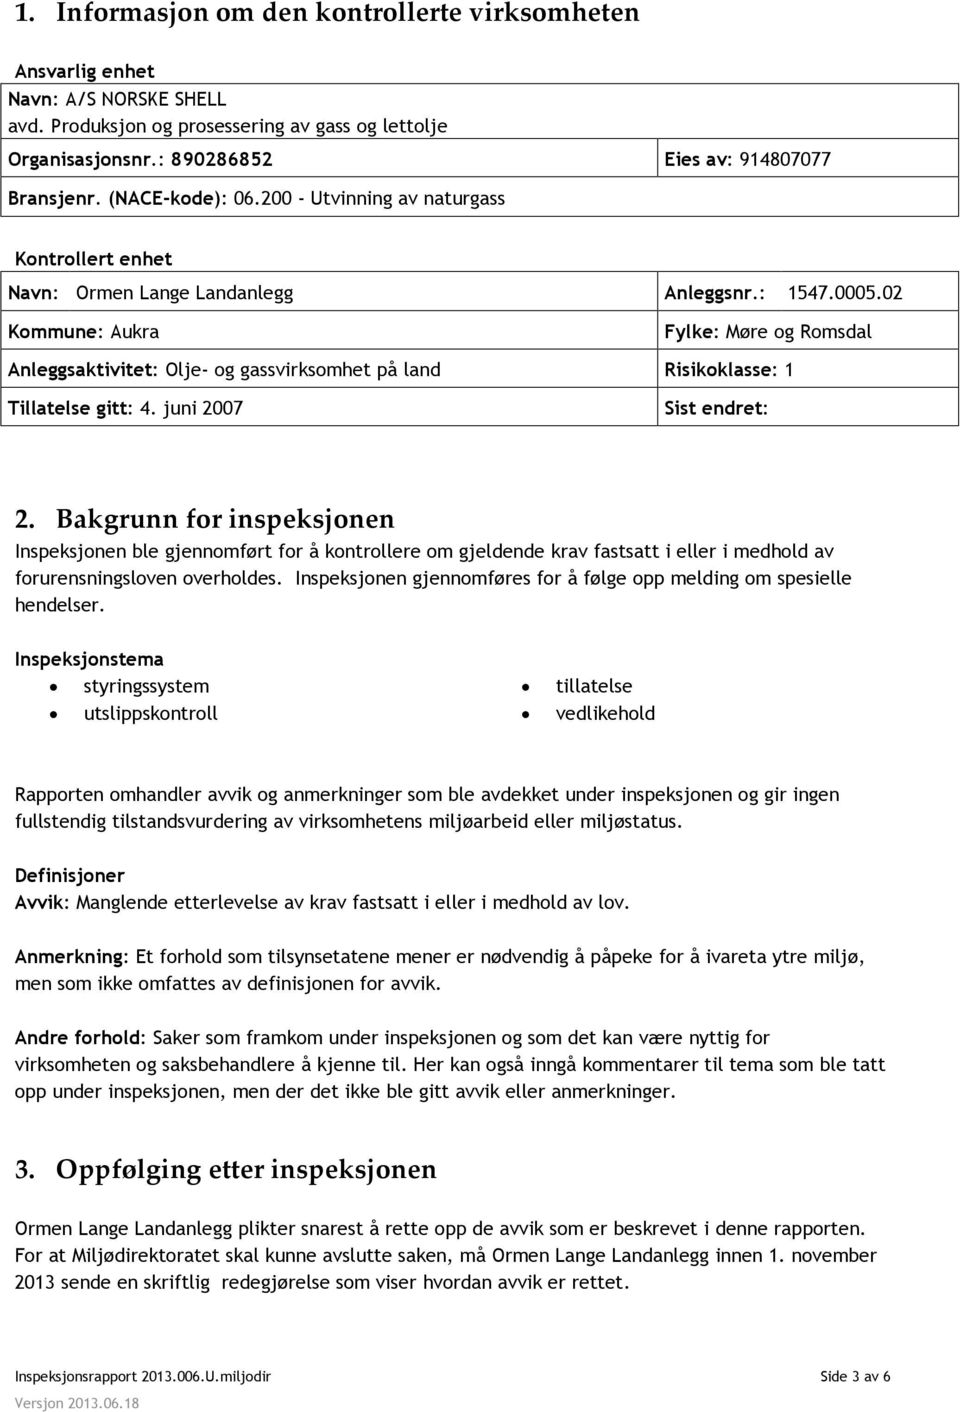 02 Kommune: Aukra Fylke: Møre og Romsdal Anleggsaktivitet: Olje- og gassvirksomhet på land Risikoklasse: 1 Tillatelse gitt: 4. juni 2007 Sist endret: 2.